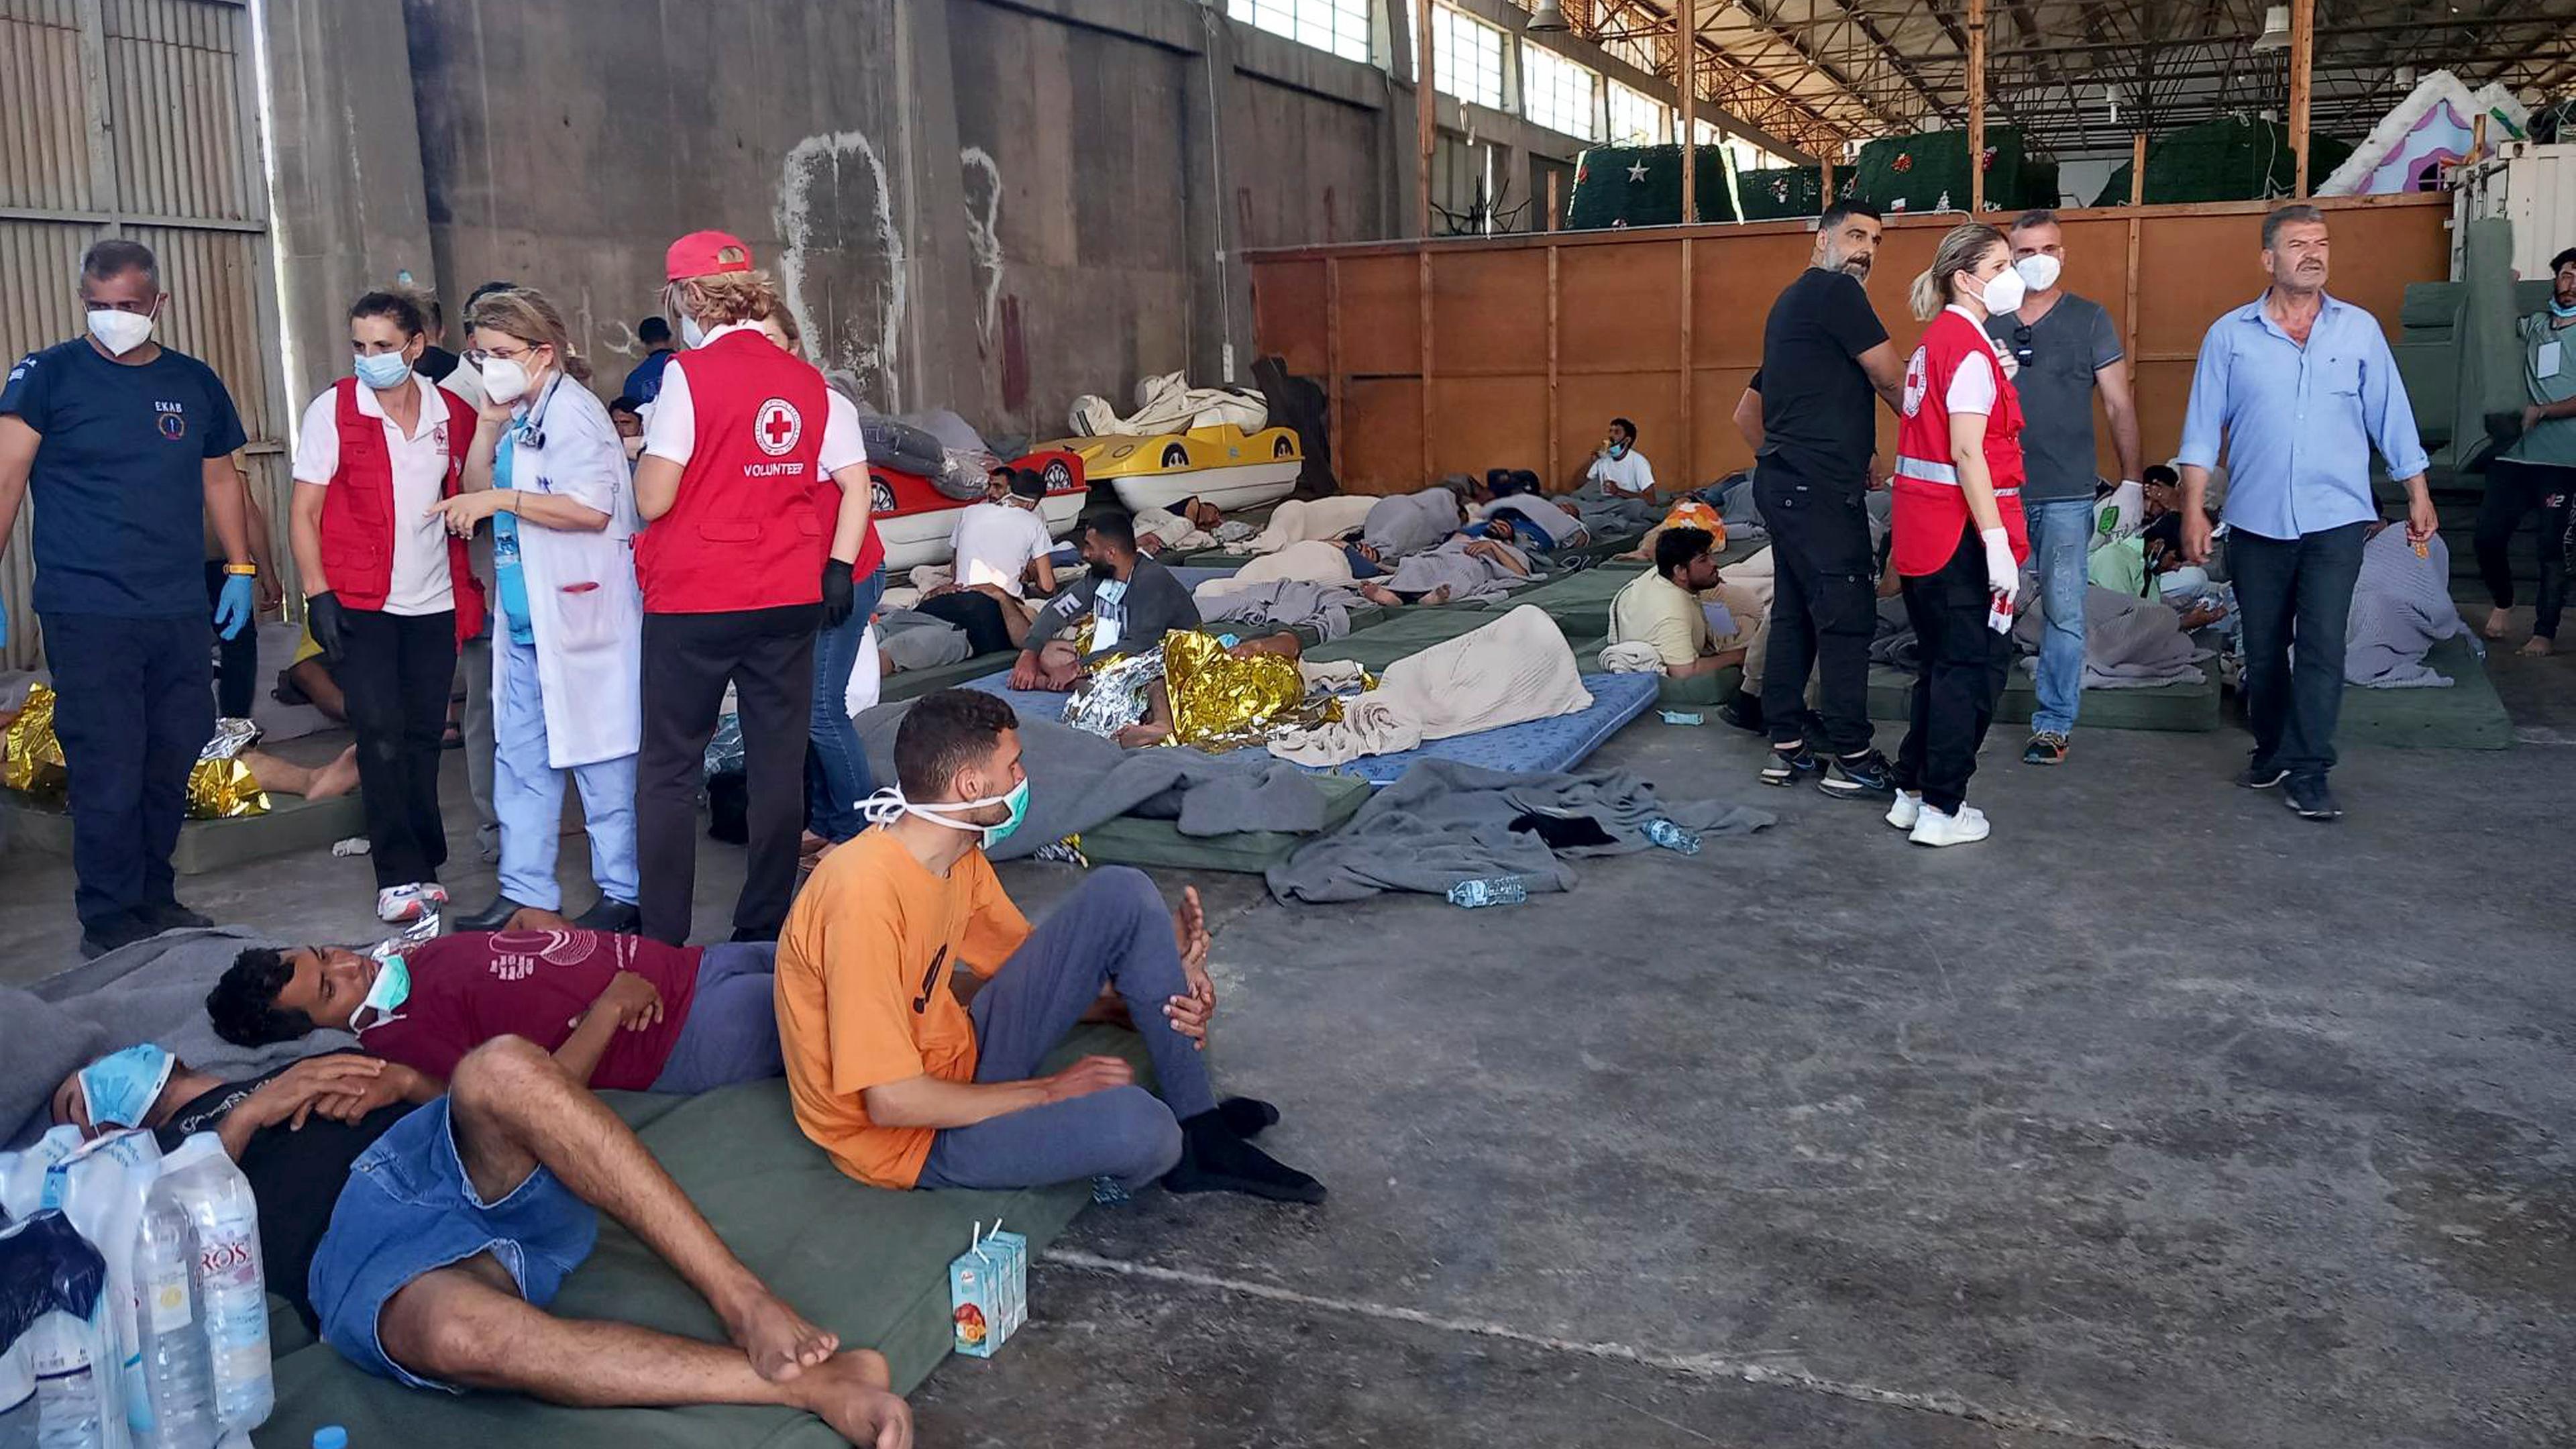 Bei einem Bootsunglück vor der Küste Griechenlands starben mindestens 59 Migranten. Mit weiteren Opfern wird gerechnet. Der Grund für das Kentern des Bootes ist bisher unklar.